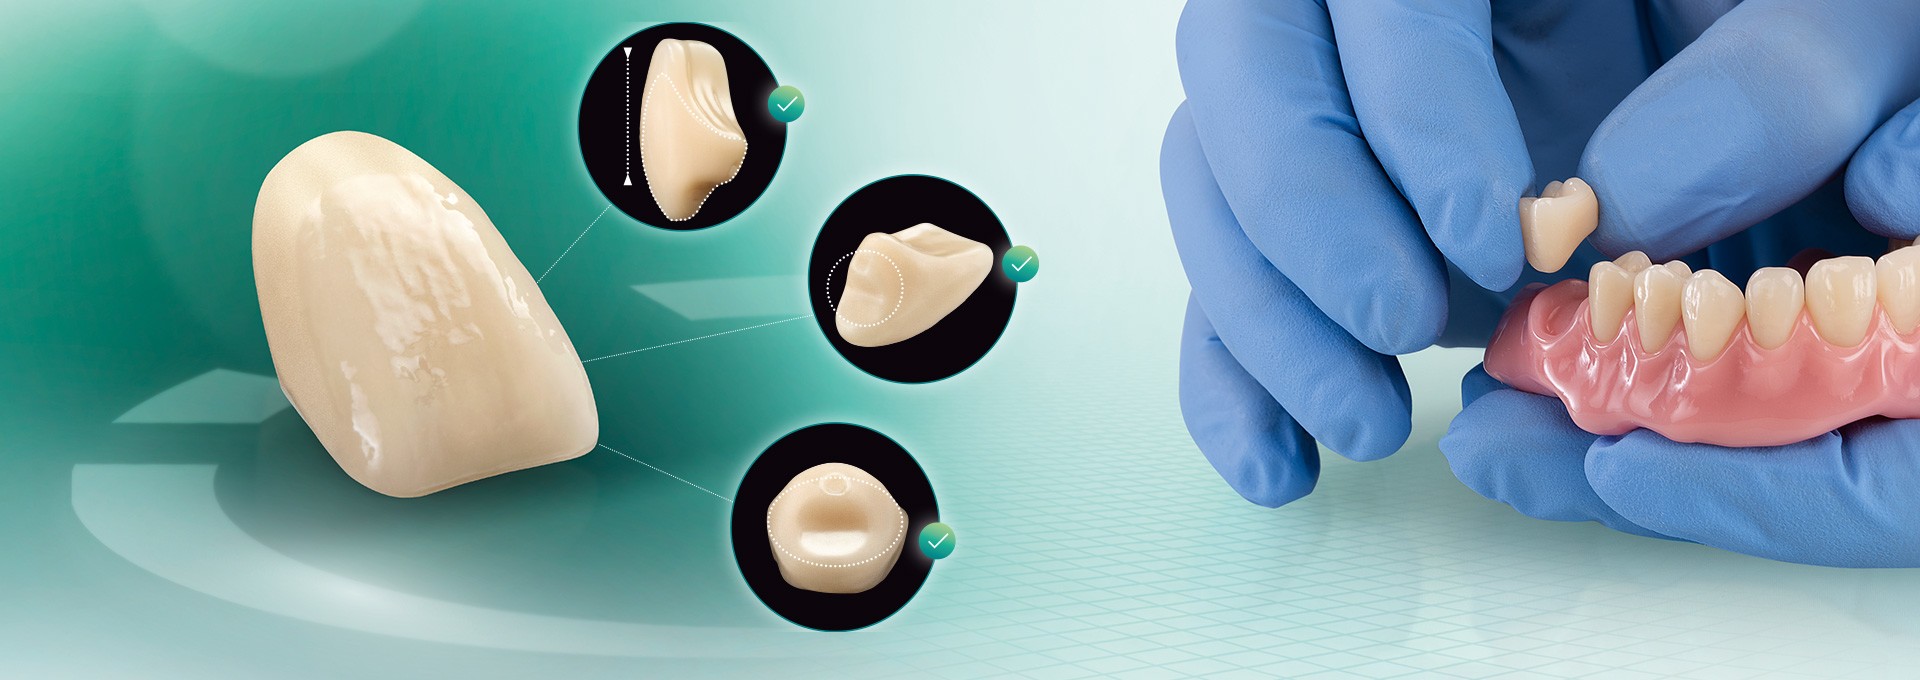 Der VITA VIONIC VIGO Zahn aus verschiedenen Perspektiven und in einer digital hergestellten Prothesenbasis